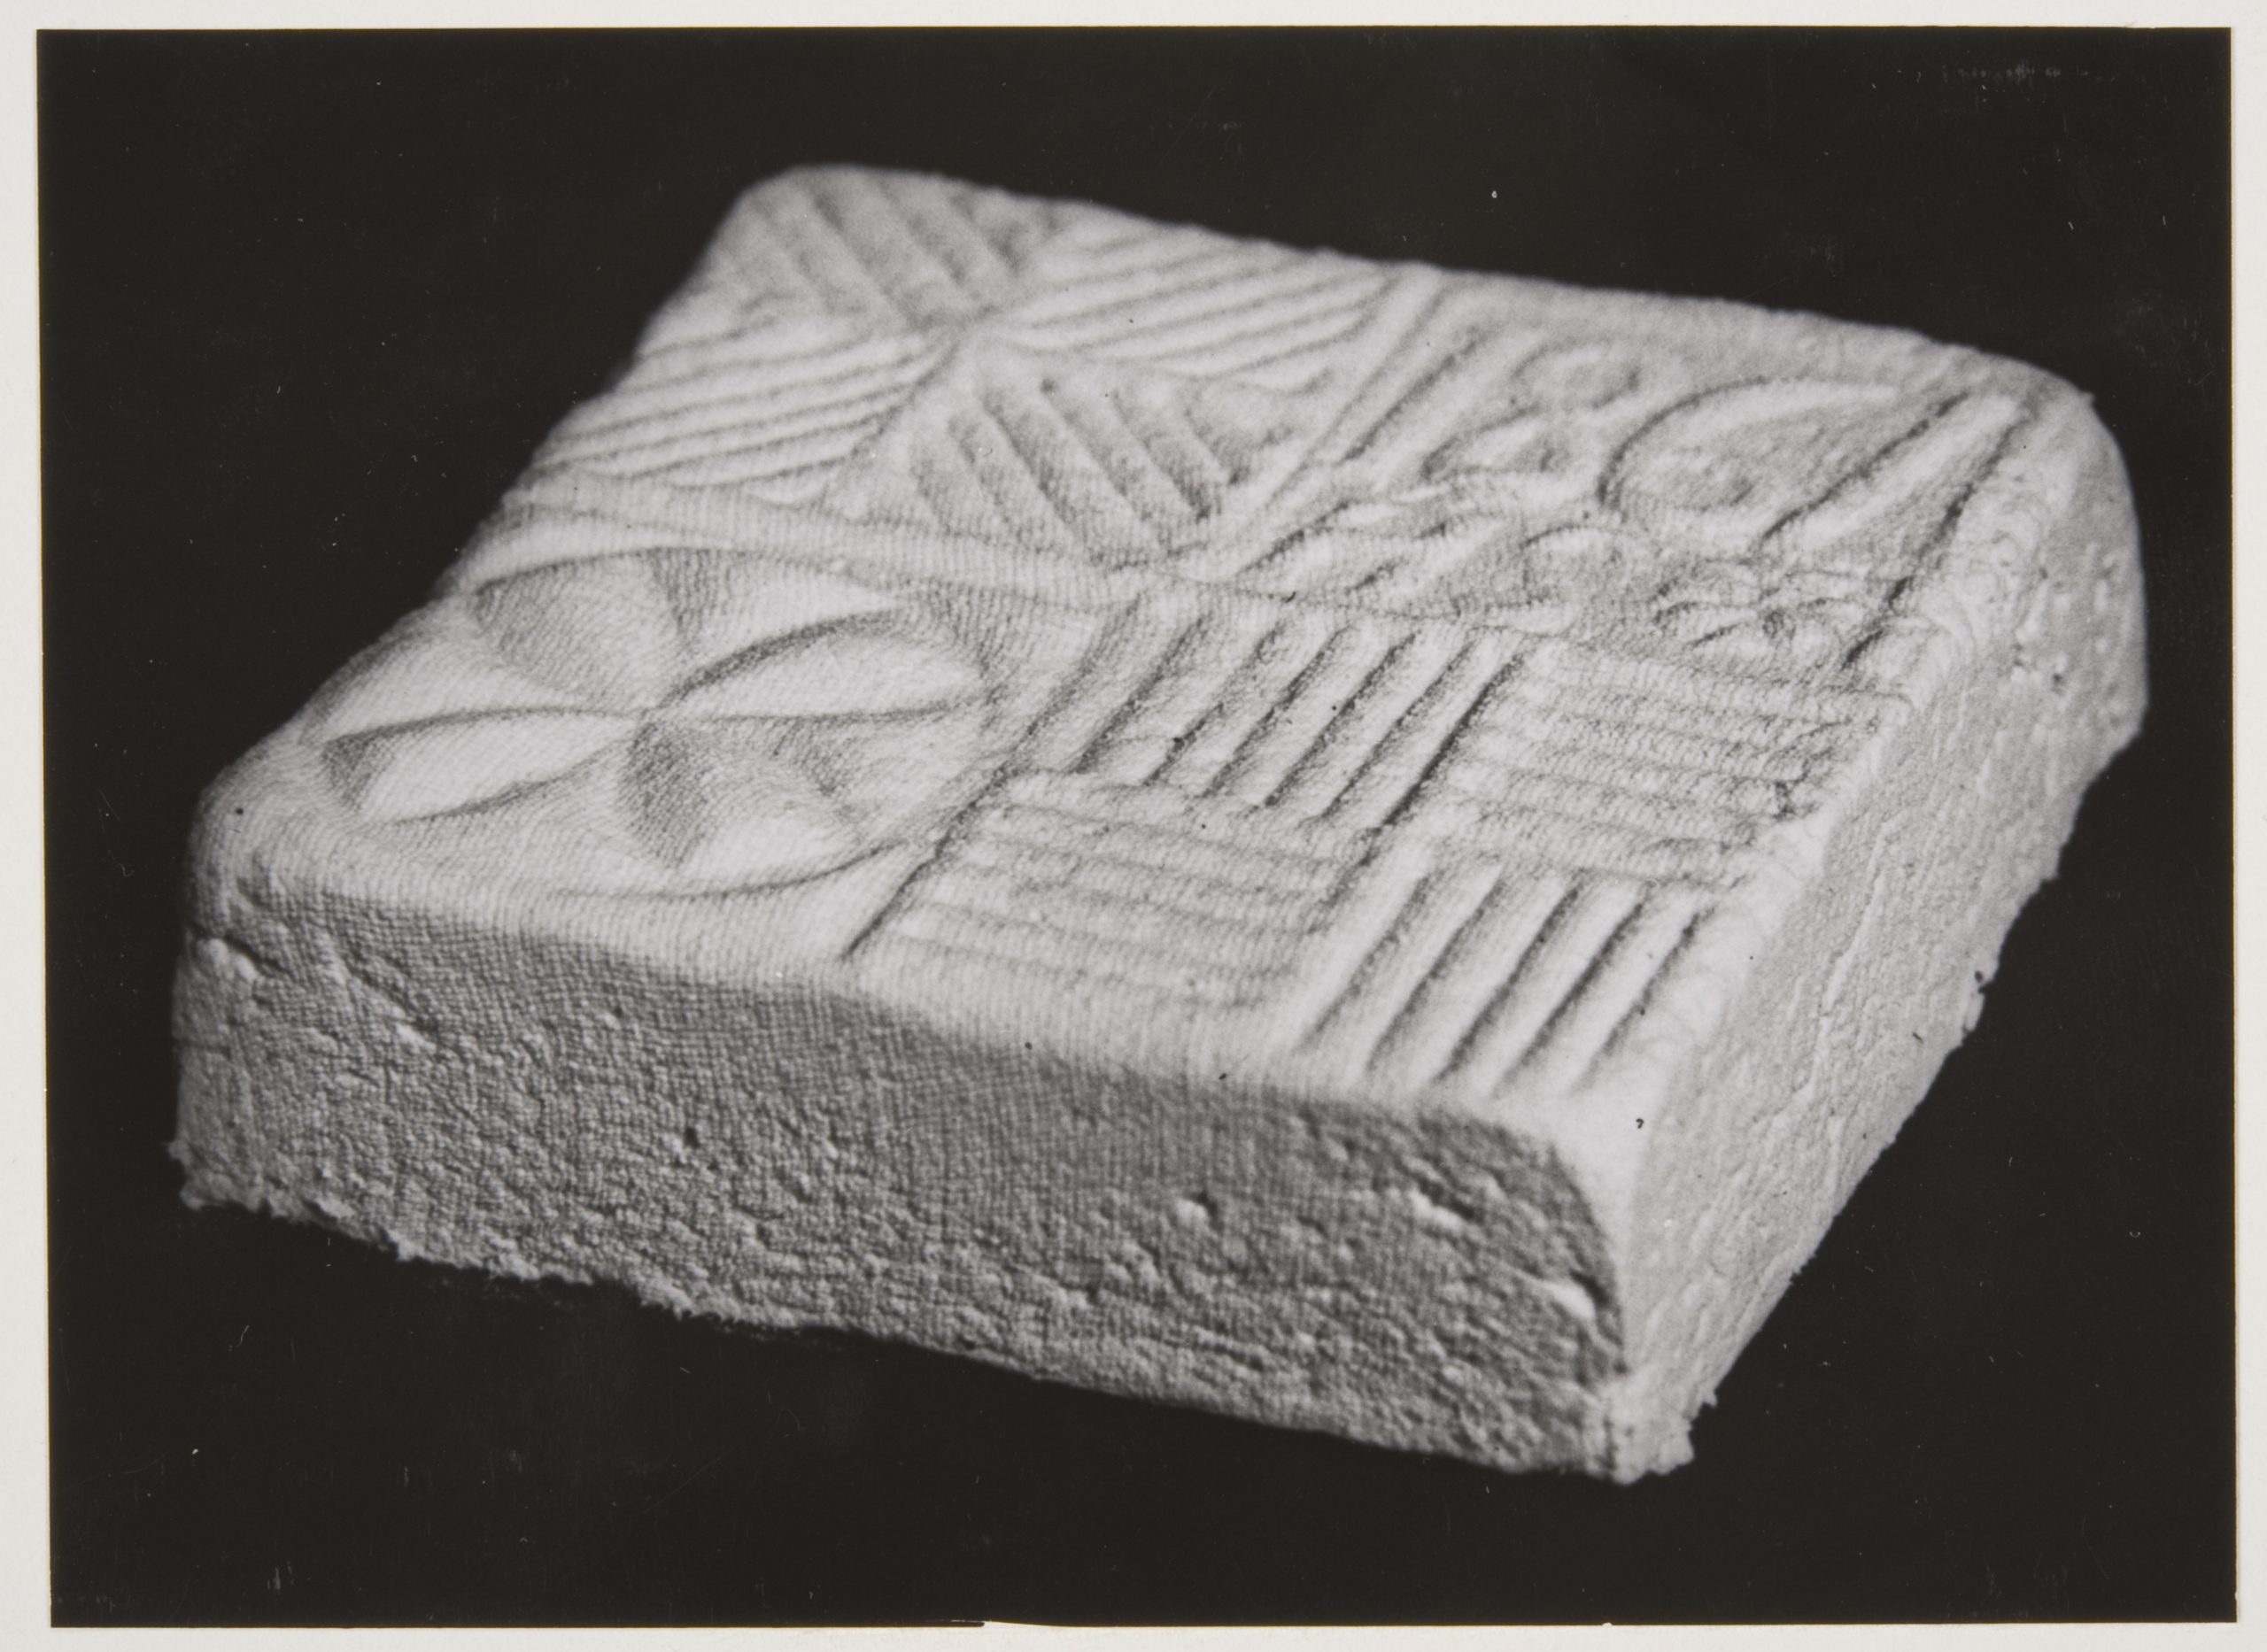 Svartvitt fotografi av en ost som beretts i ostform. Osten är låg och fyrkantig. En dekoration från formens botten syns på ostens ovansida.